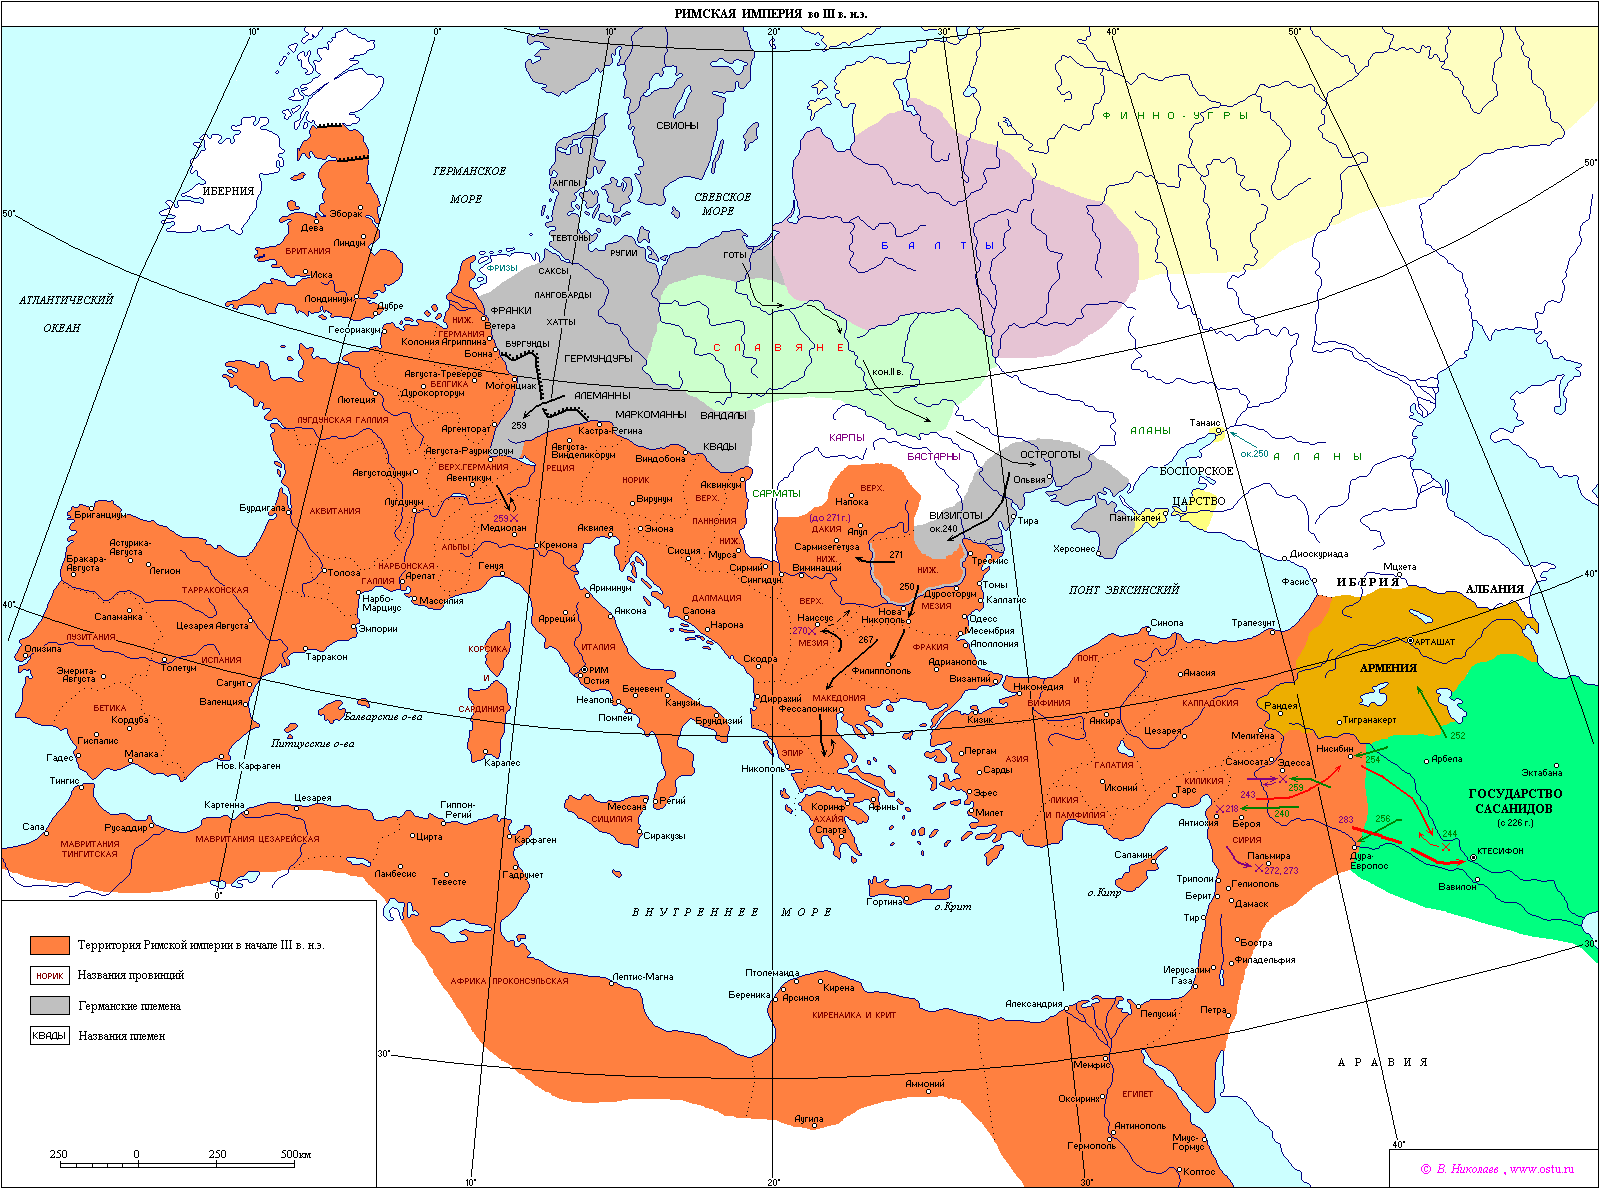 218-273年的羅馬帝國